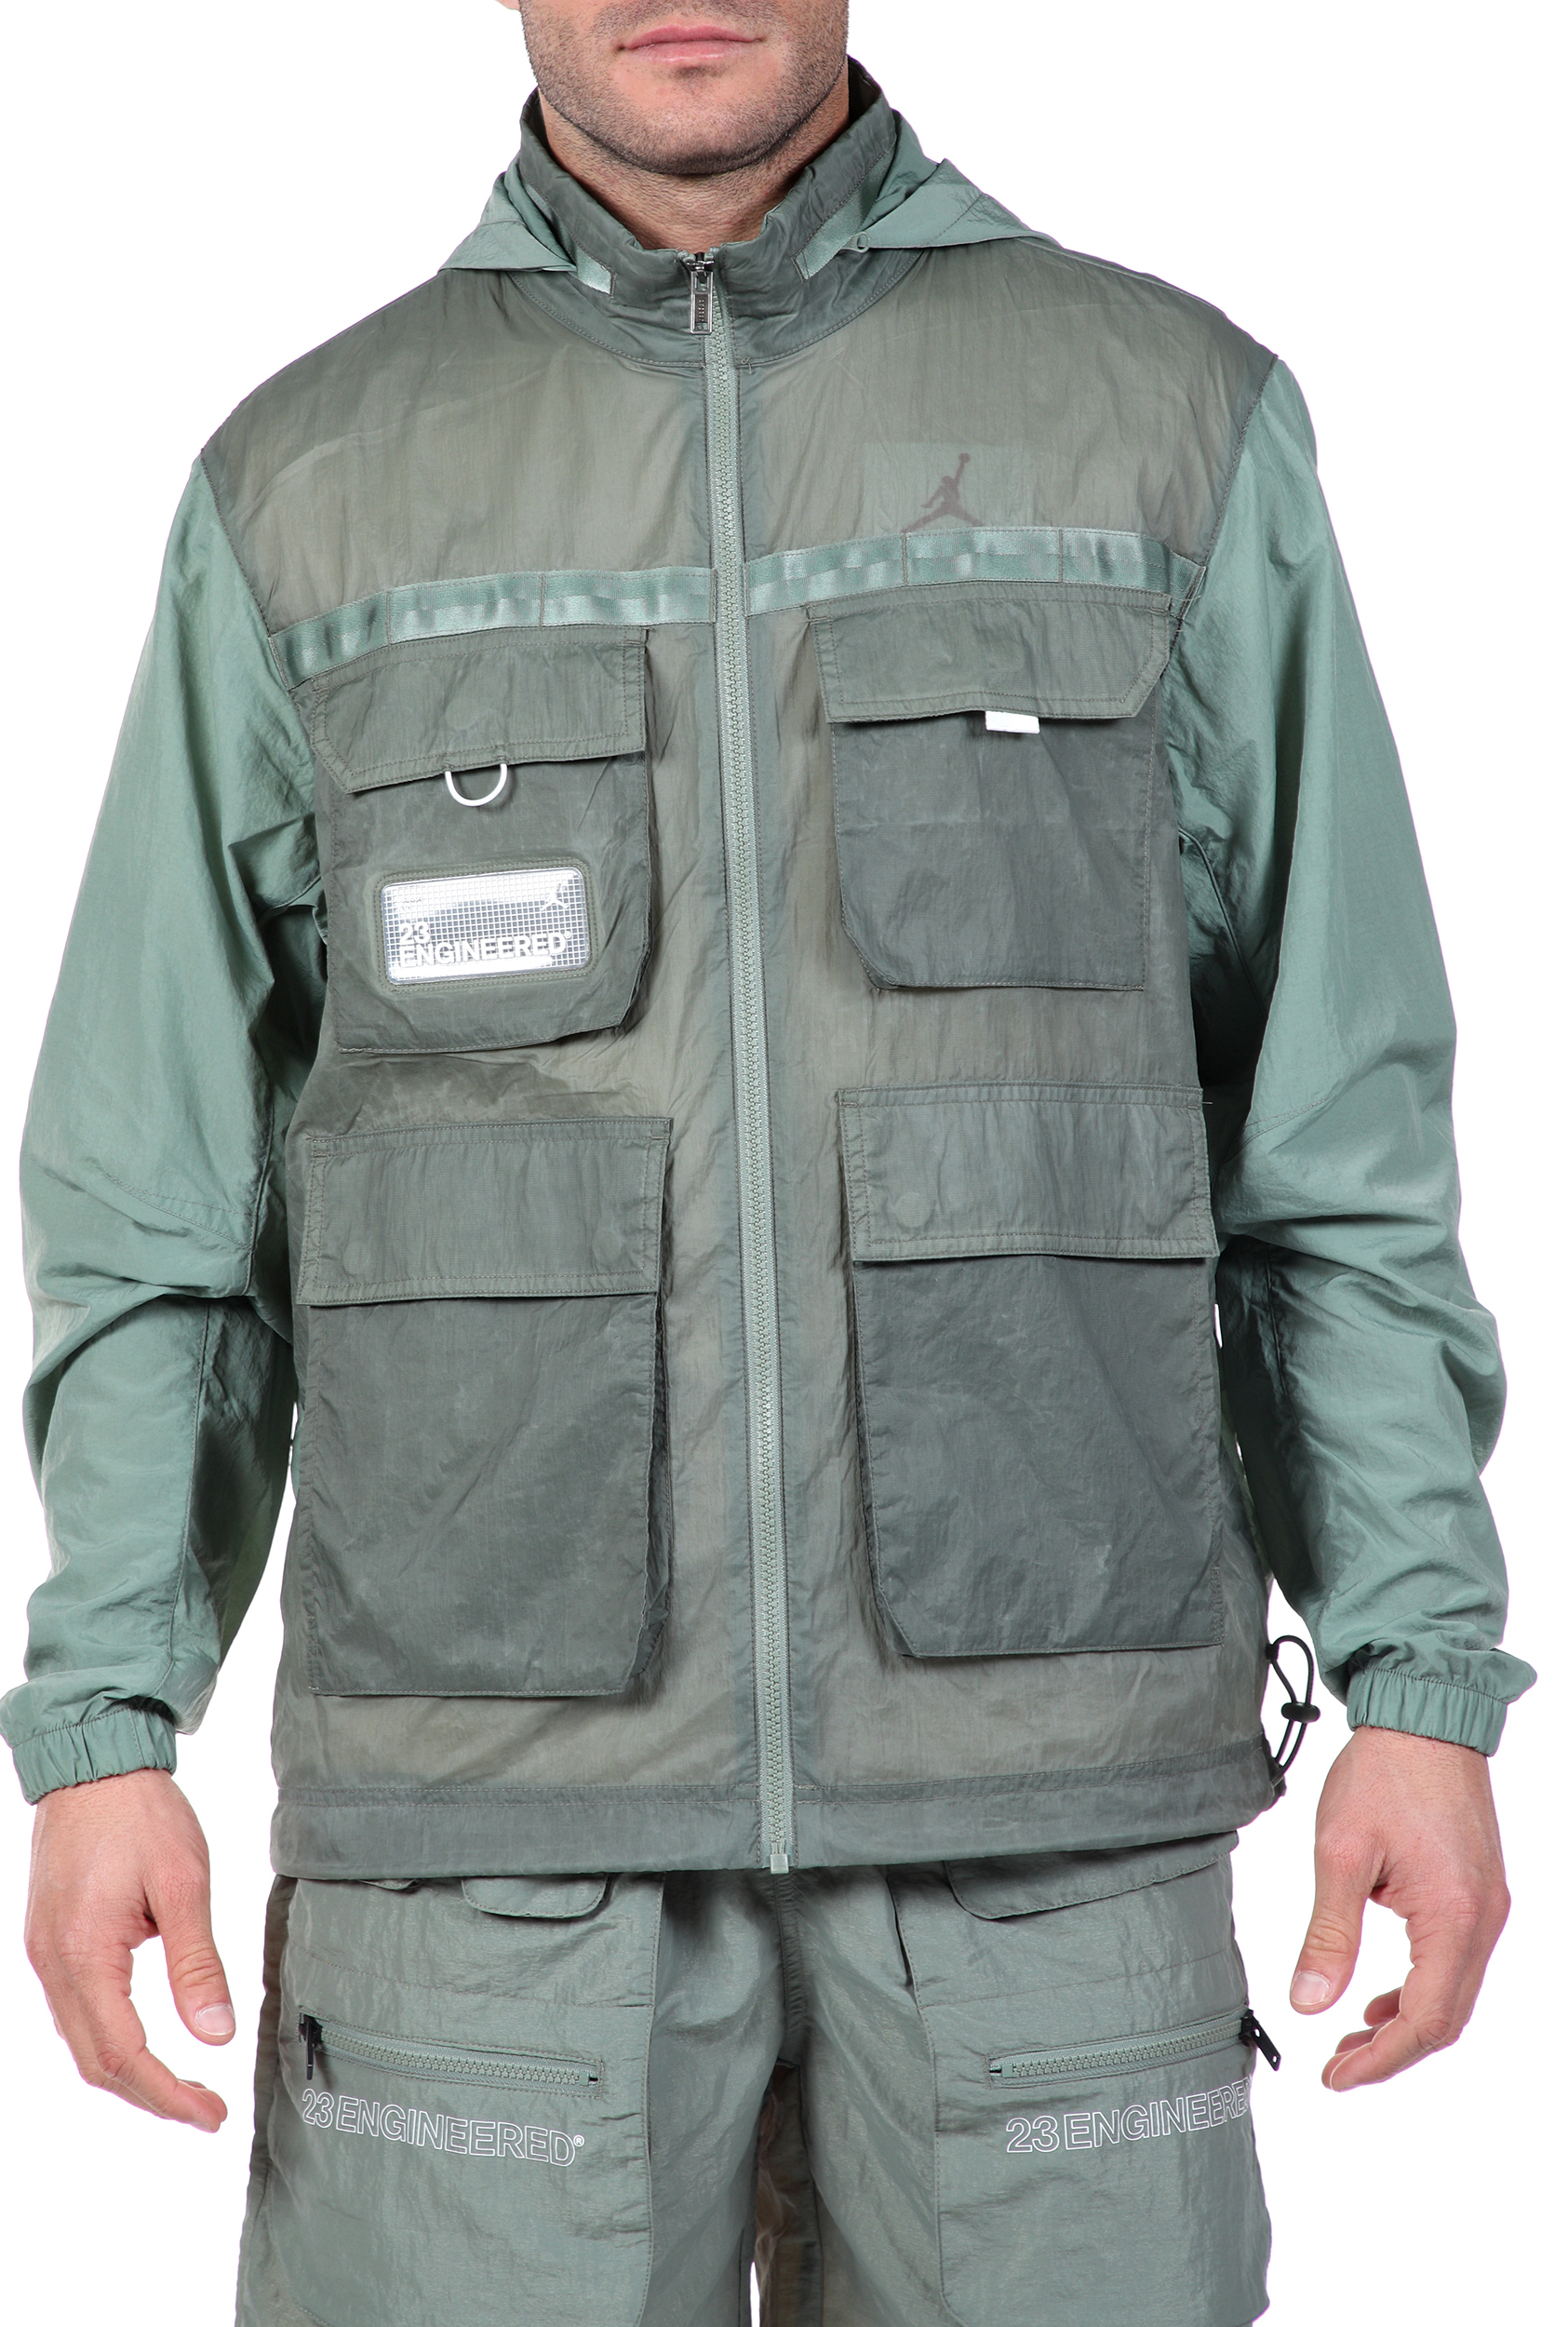 Ανδρικά/Ρούχα/Πανωφόρια/Τζάκετς NIKE - Ανδρικό jacket NIKE M J 23ENG FZ JKT πράσινο